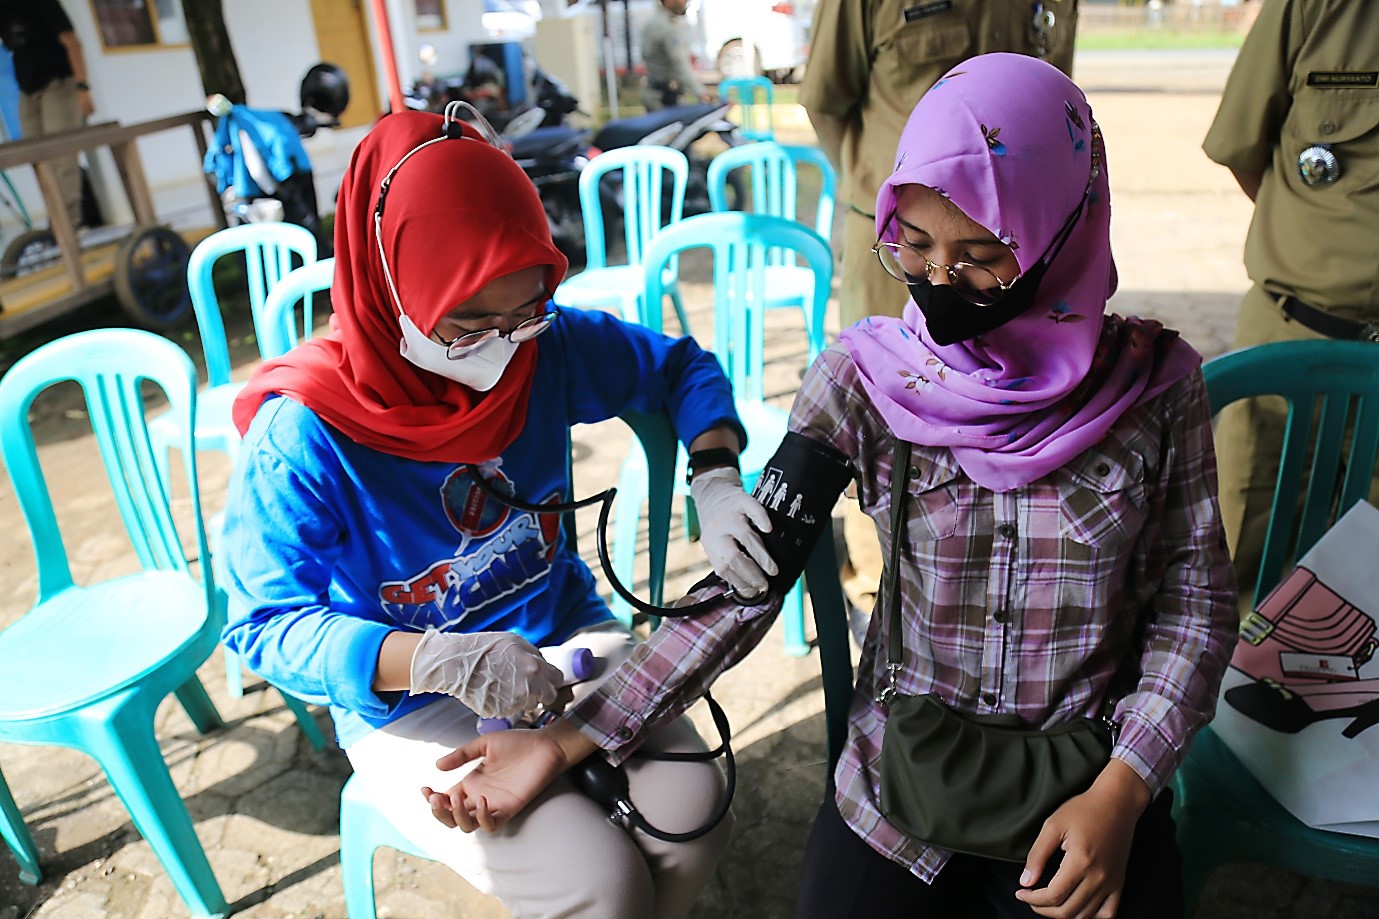 Tenaga Kesehatan memeriksa tekanan darah Siti Mustabsyiroh di Kantor Kepala Desa Tayukulon. Siti baru-baru ini menjalani operasi jantung sehingga dirinya belum dapat menerima vaksin COVID-19. (foto oleh: Tim Dokumentasi AIHSP)